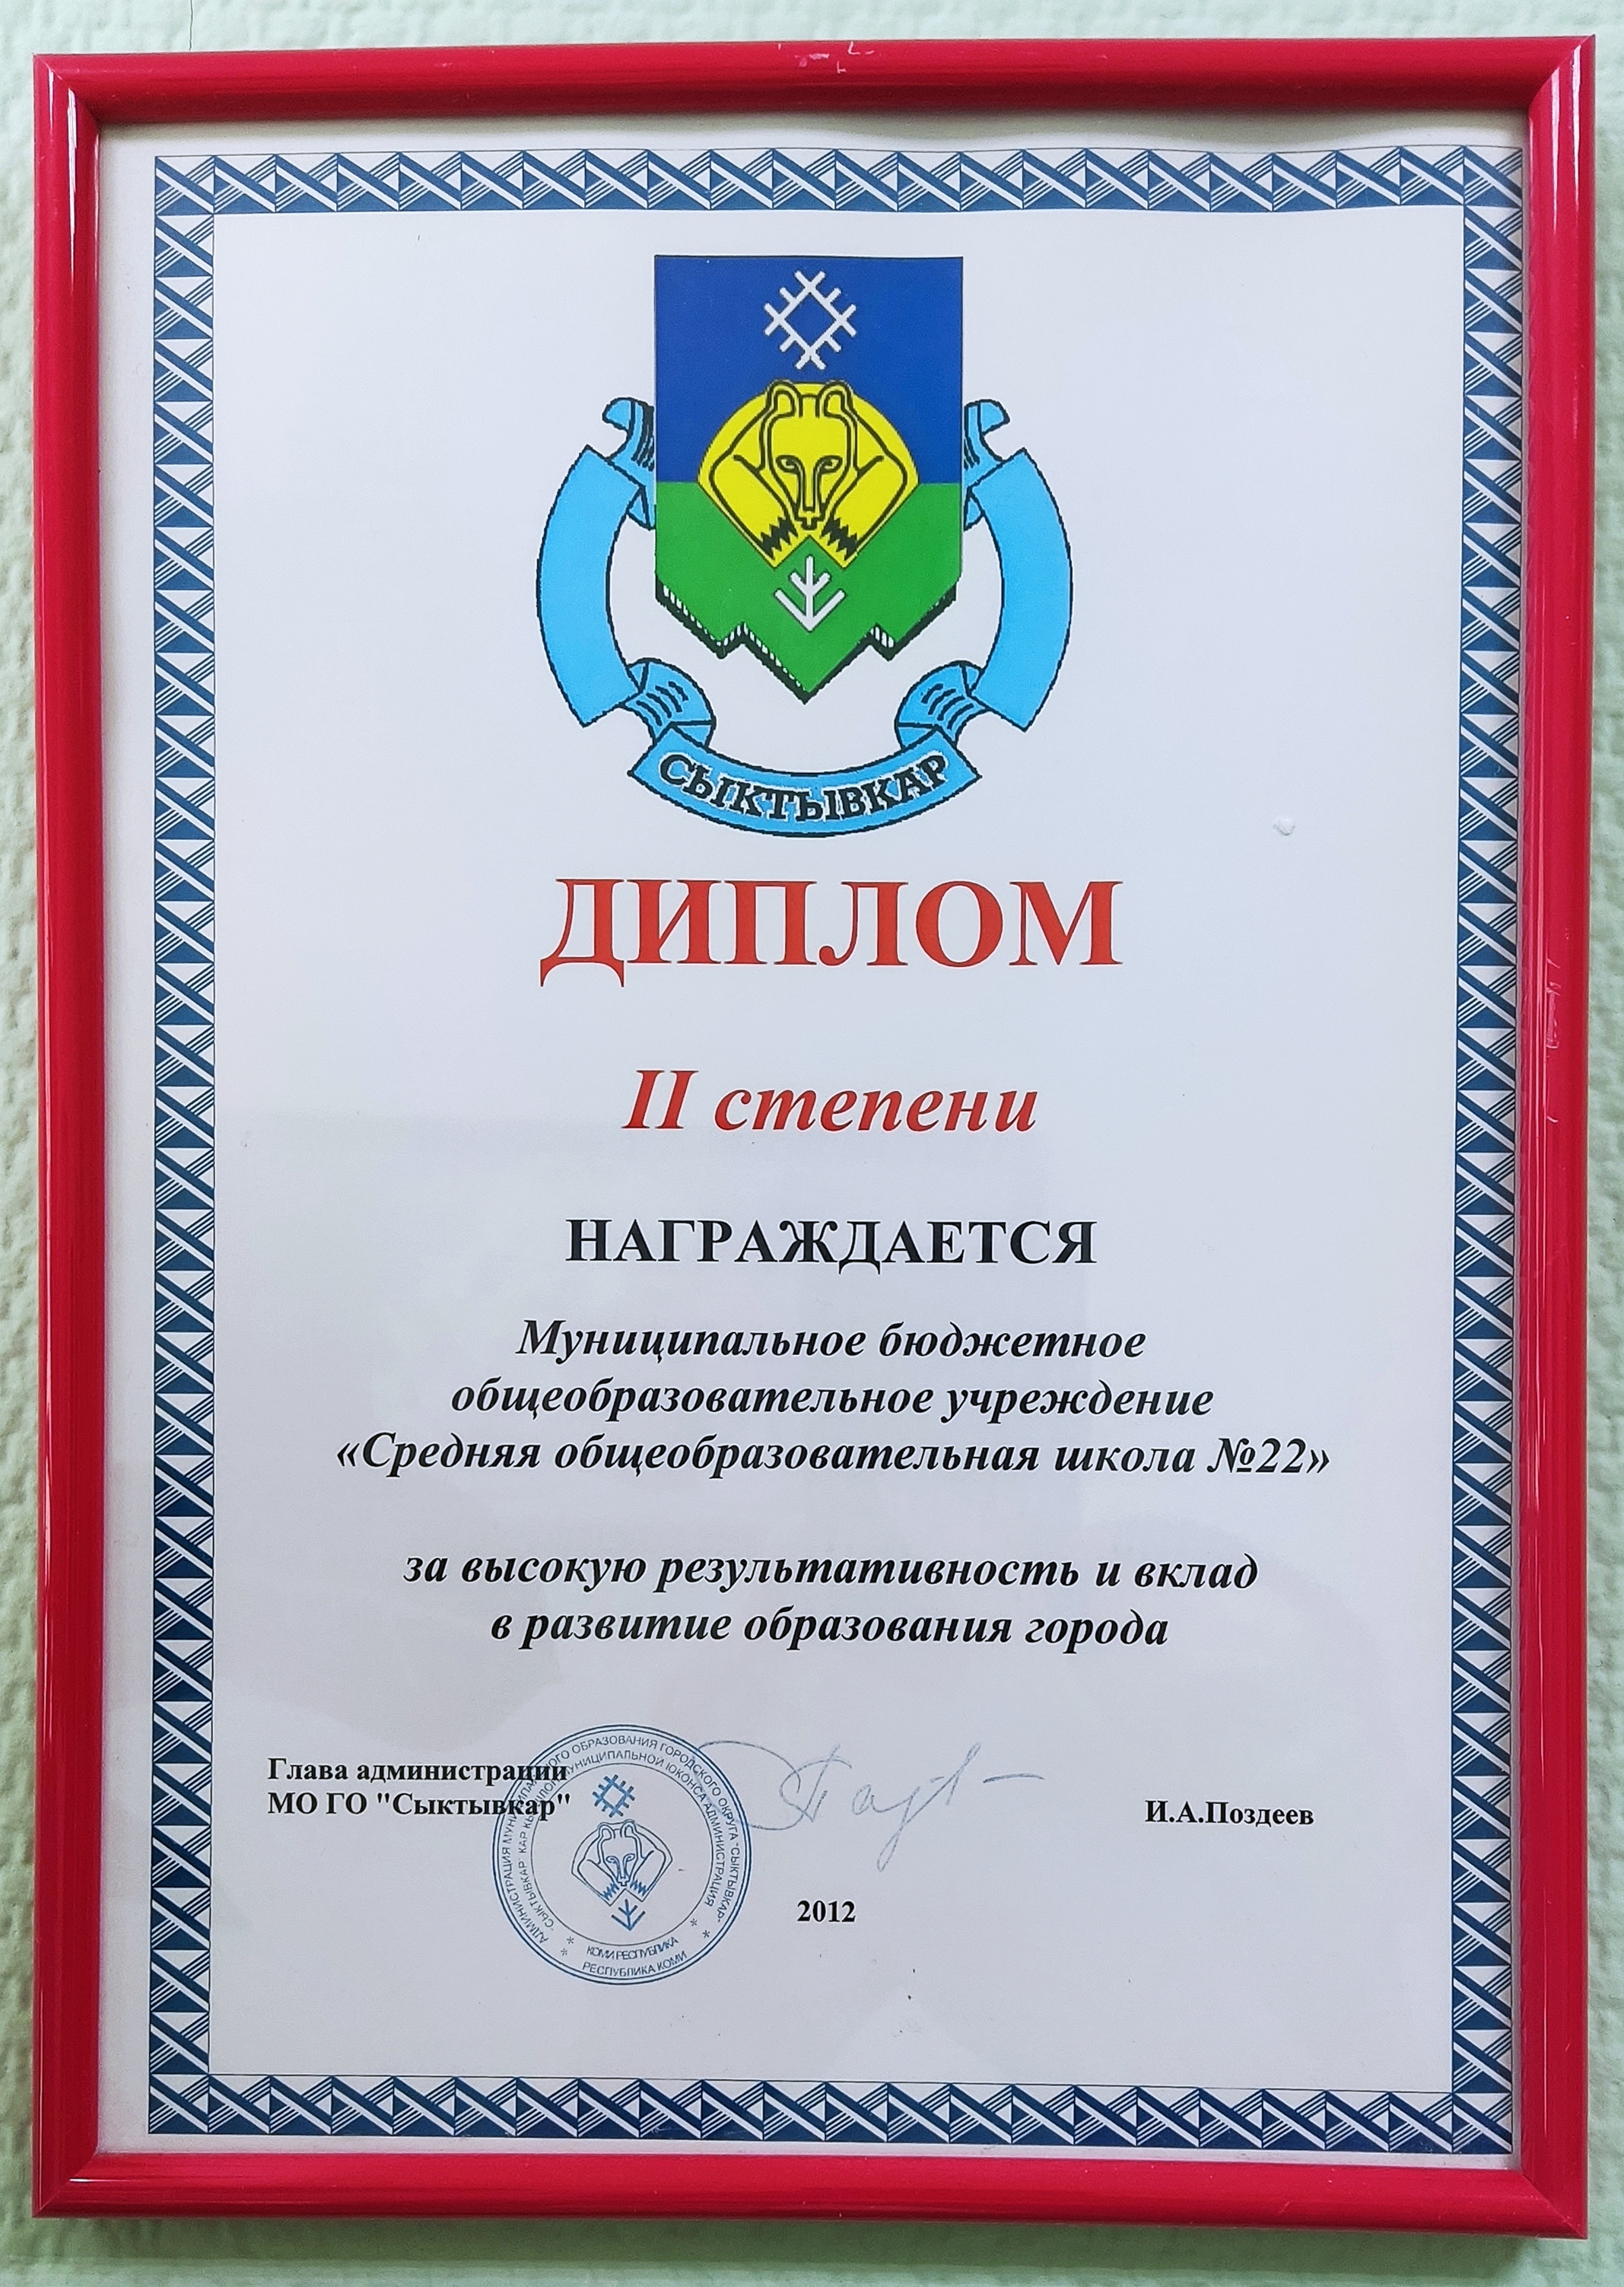 Диплом II степени за высокую результативность и вклад в развитие образования города, 2012 г.